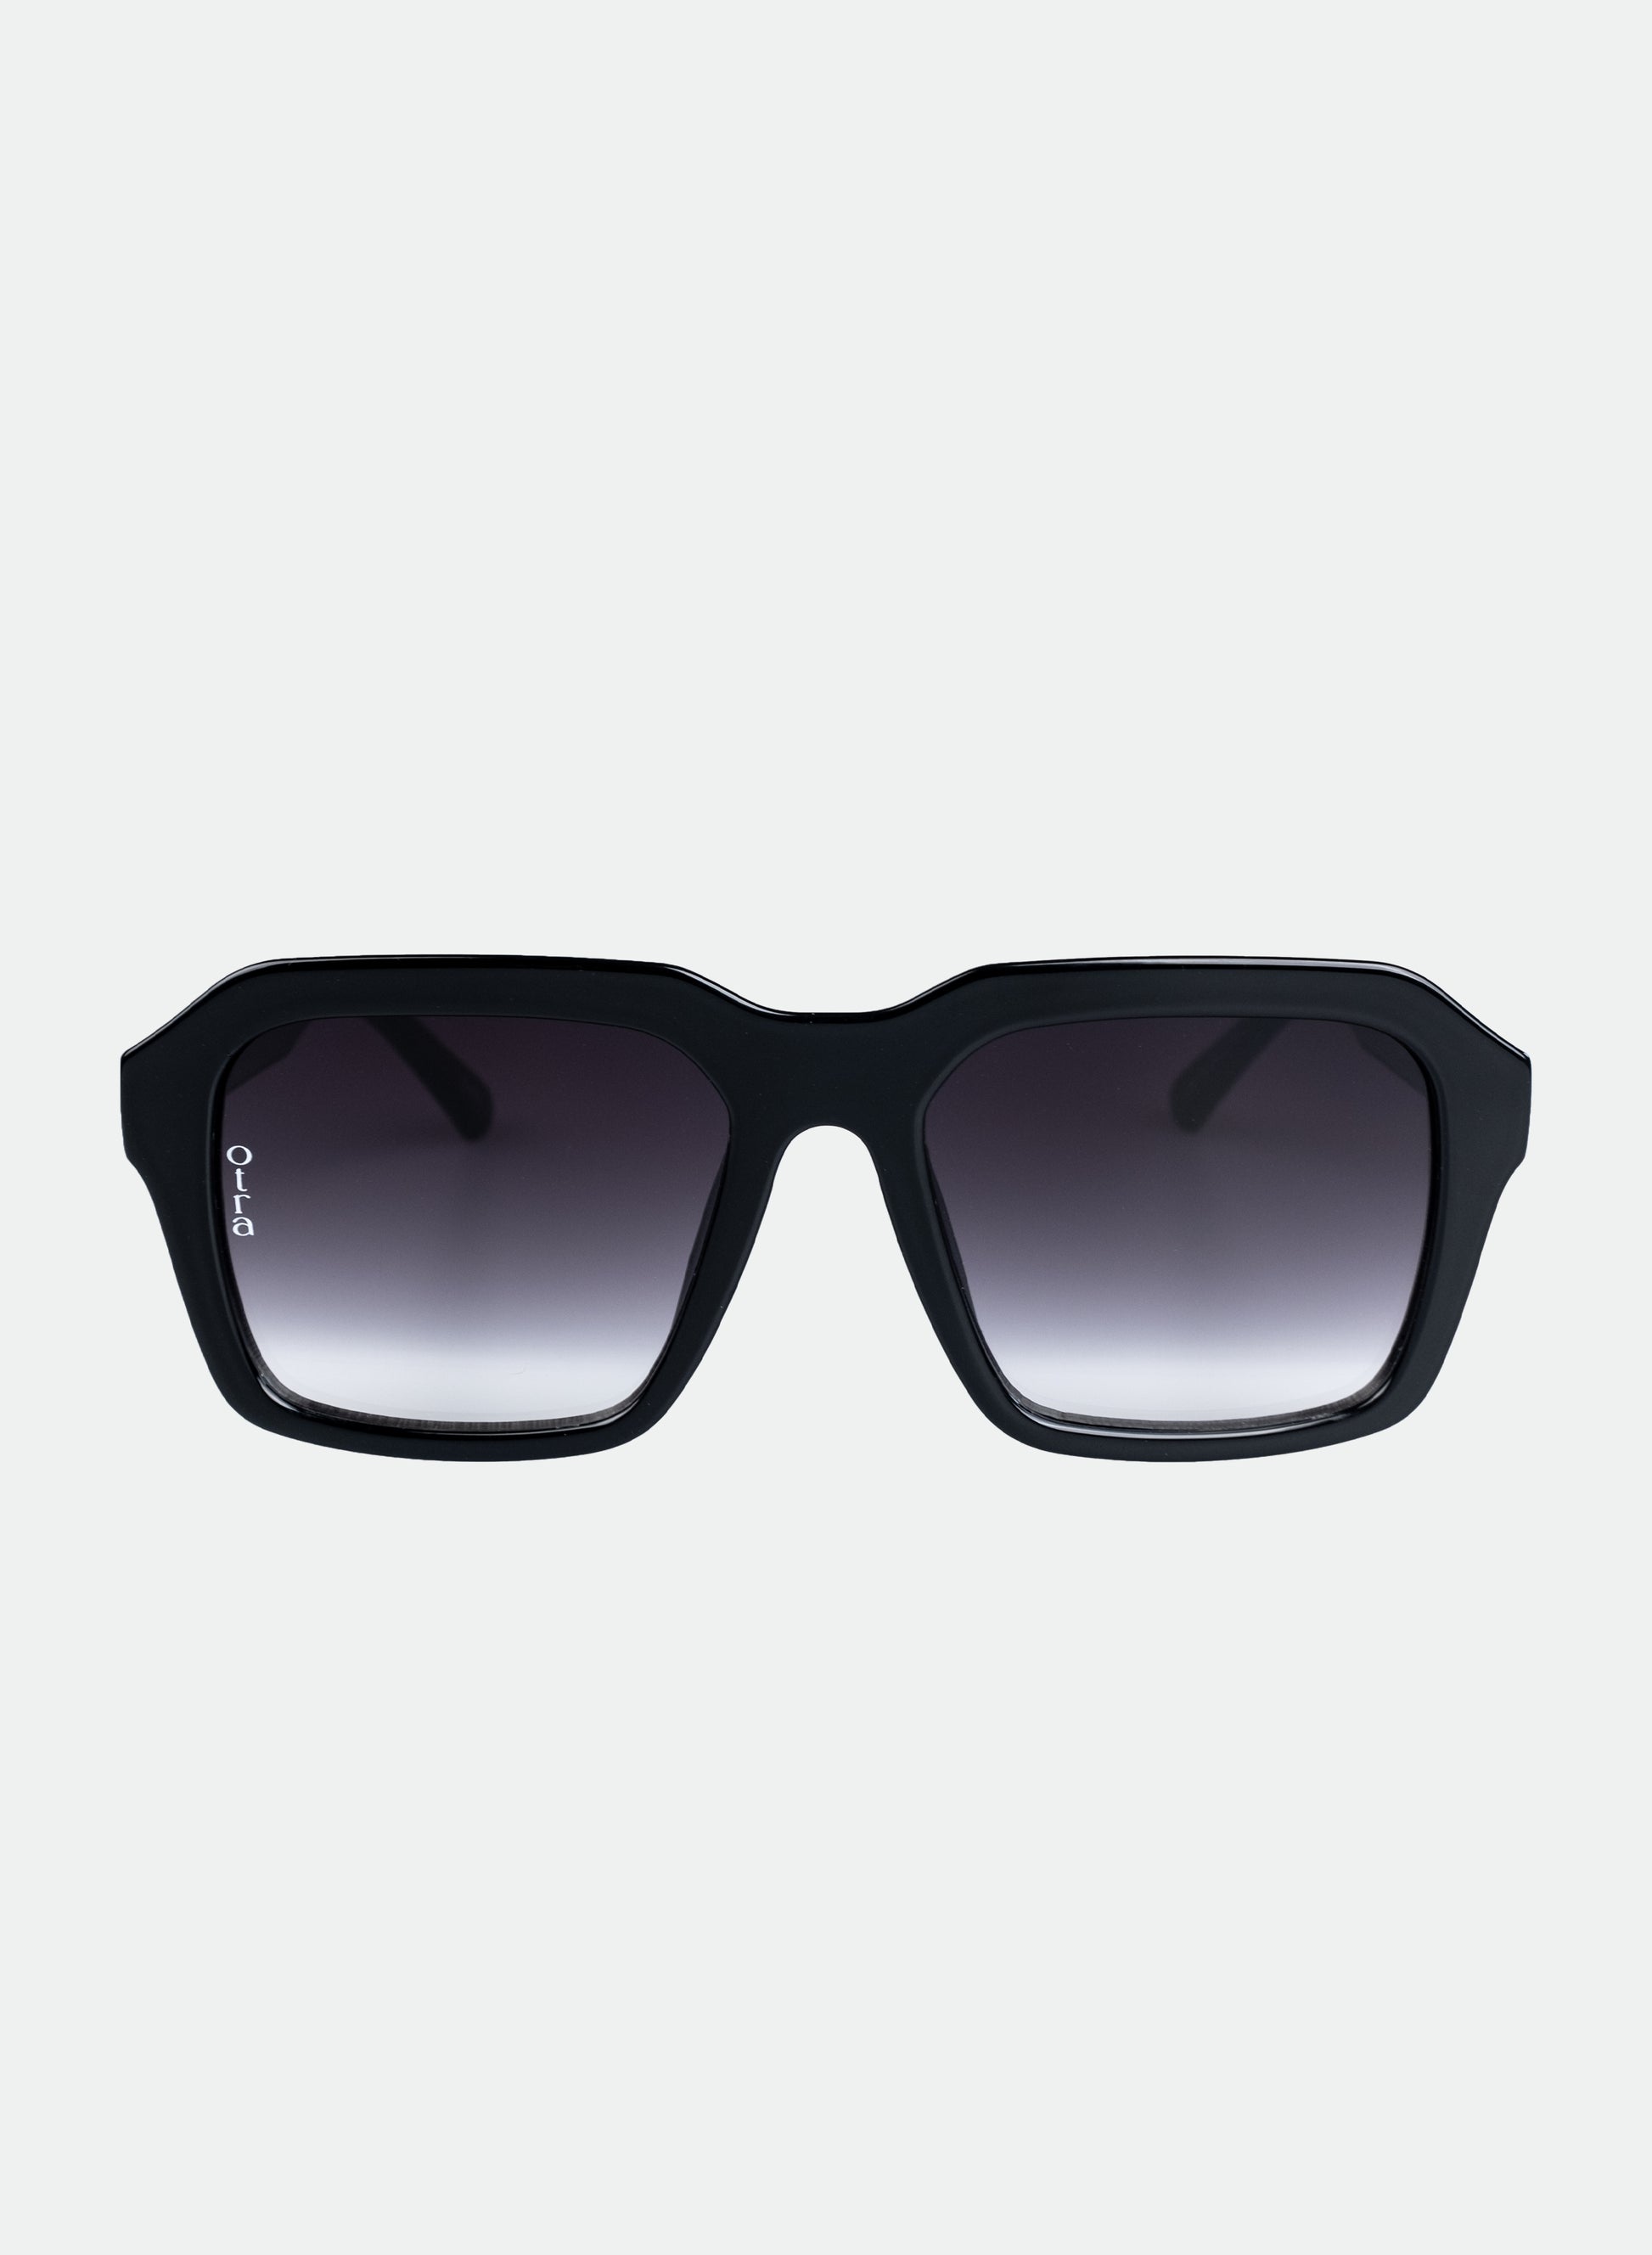 Lennox sunglasses in black